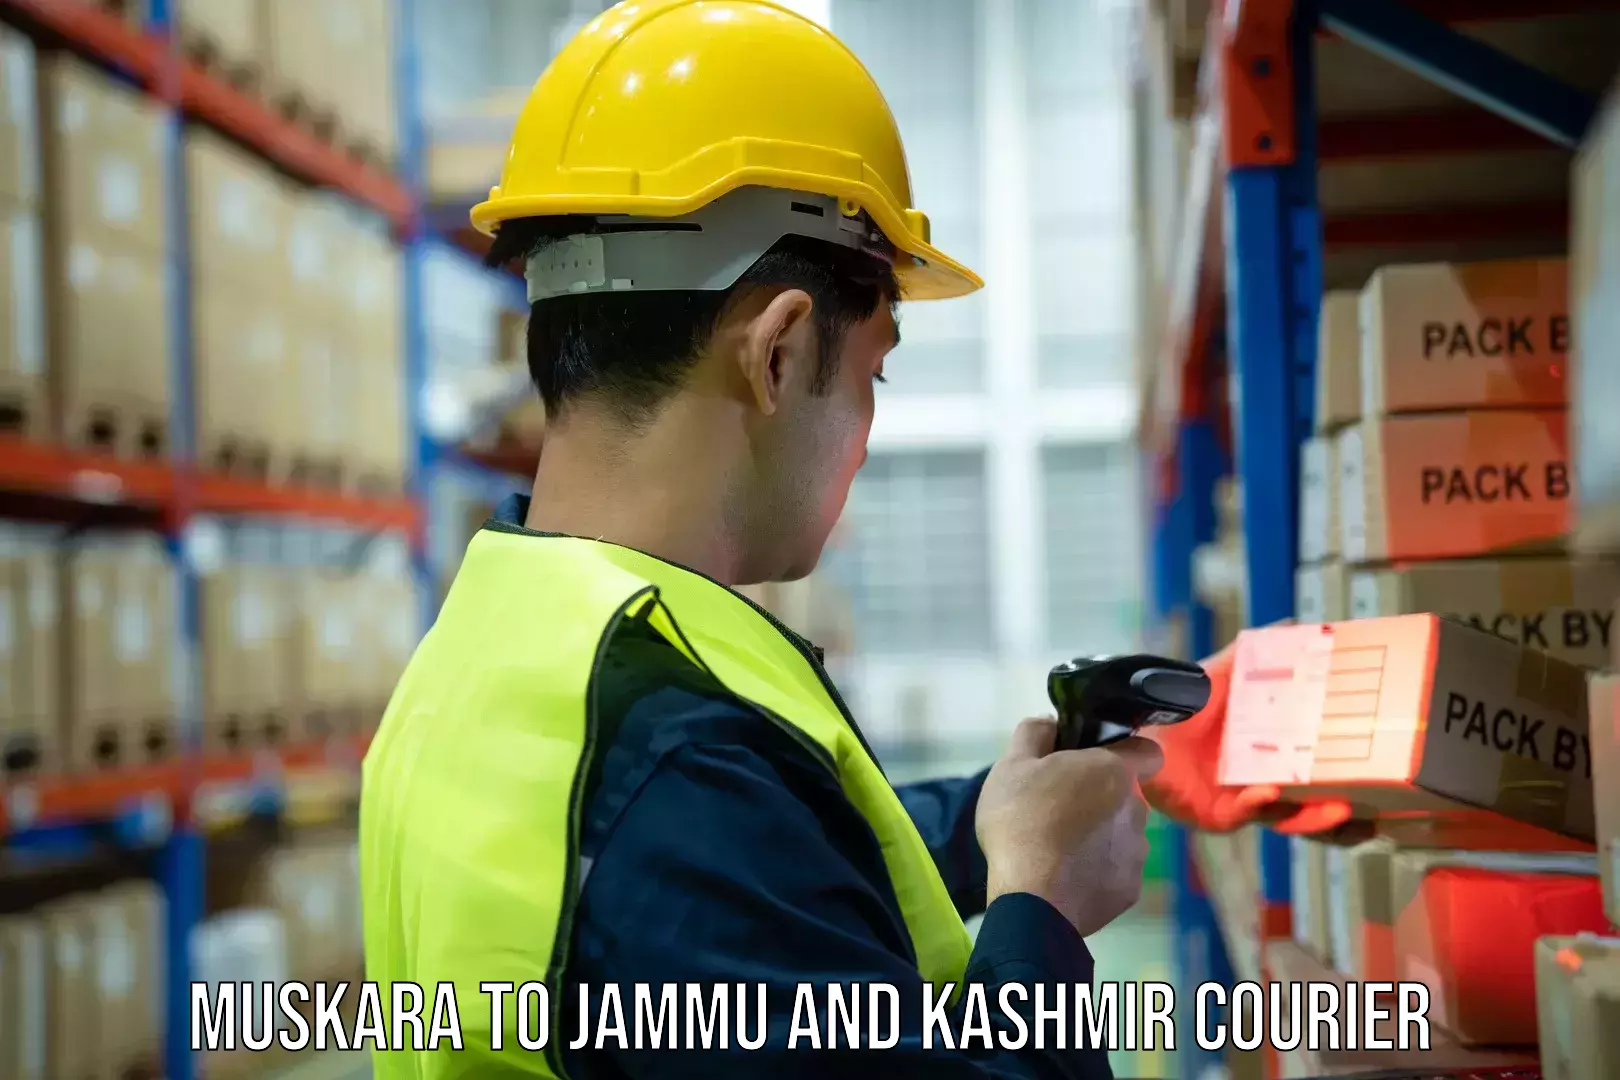 Courier service partnerships Muskara to Jammu and Kashmir